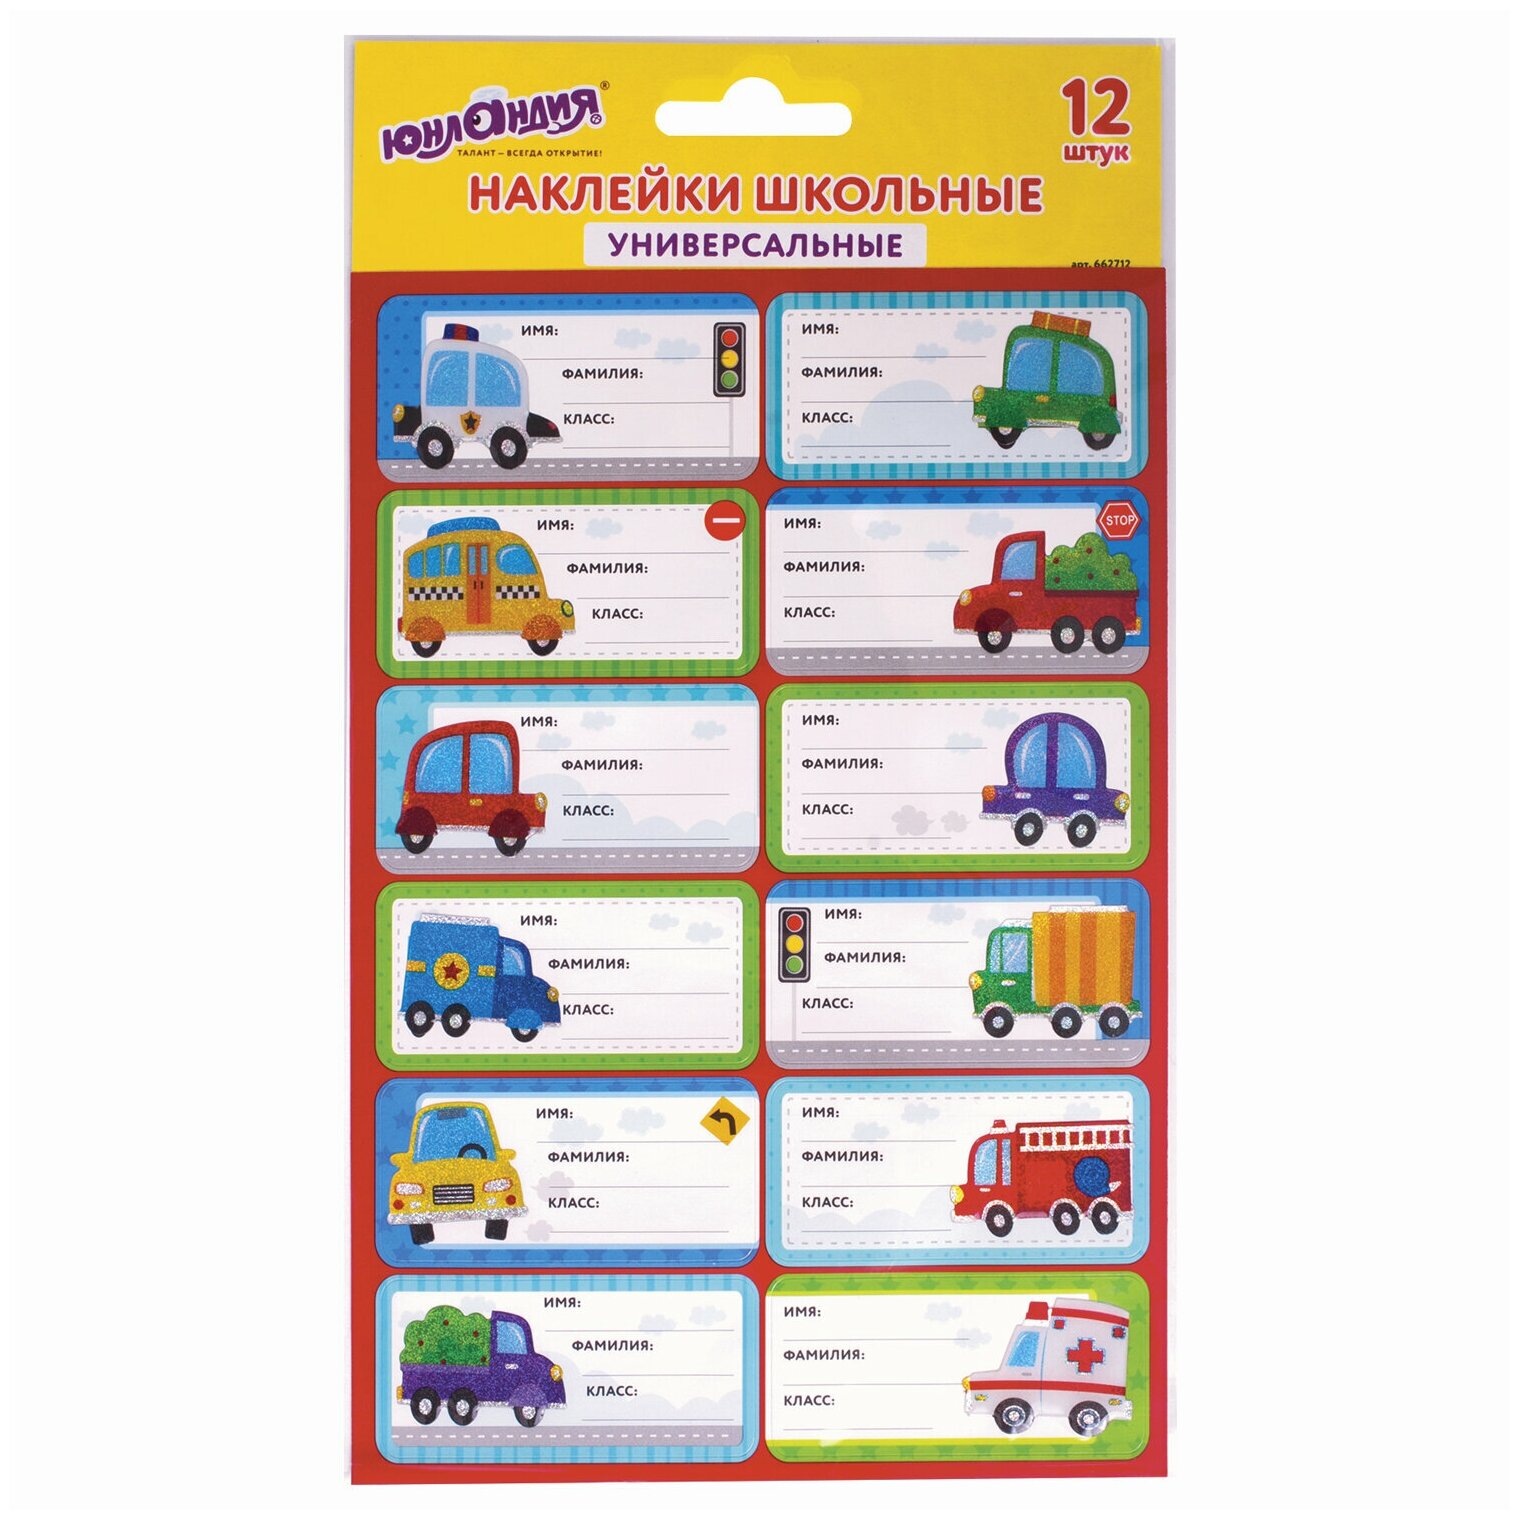 Наклейки-стикеры детские набор для маркировки школьных принадлежностей Машинки, 12 штук, 14х21 см, Юнландия, 662712